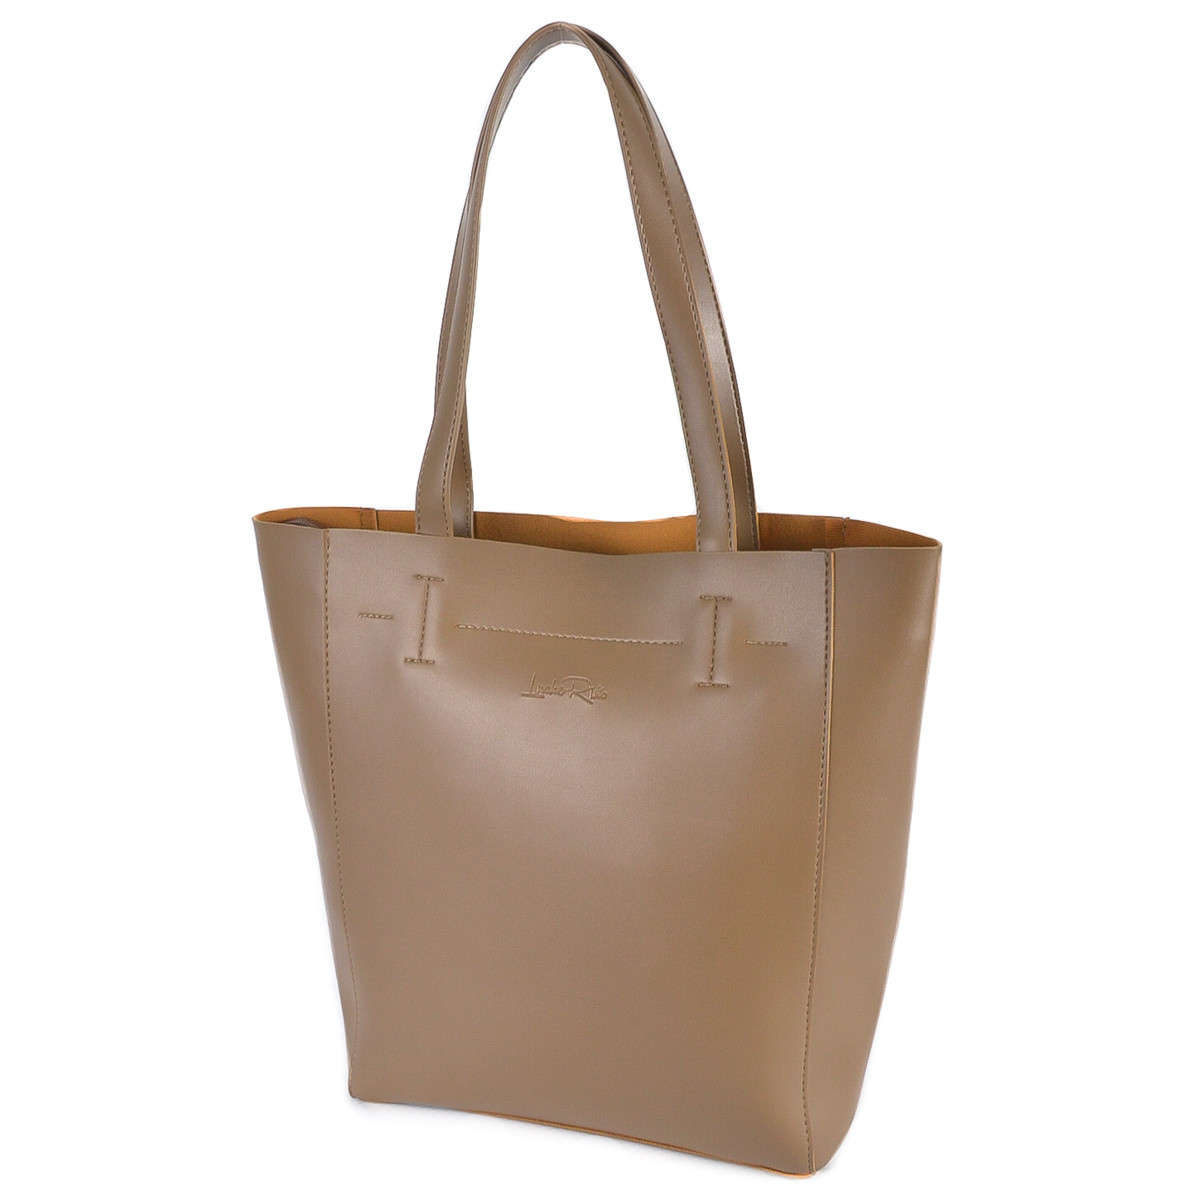 МОККО — фабрична сумка-шопер із простим кроєм і мінімальним оздобленням (Луцьк, 518)